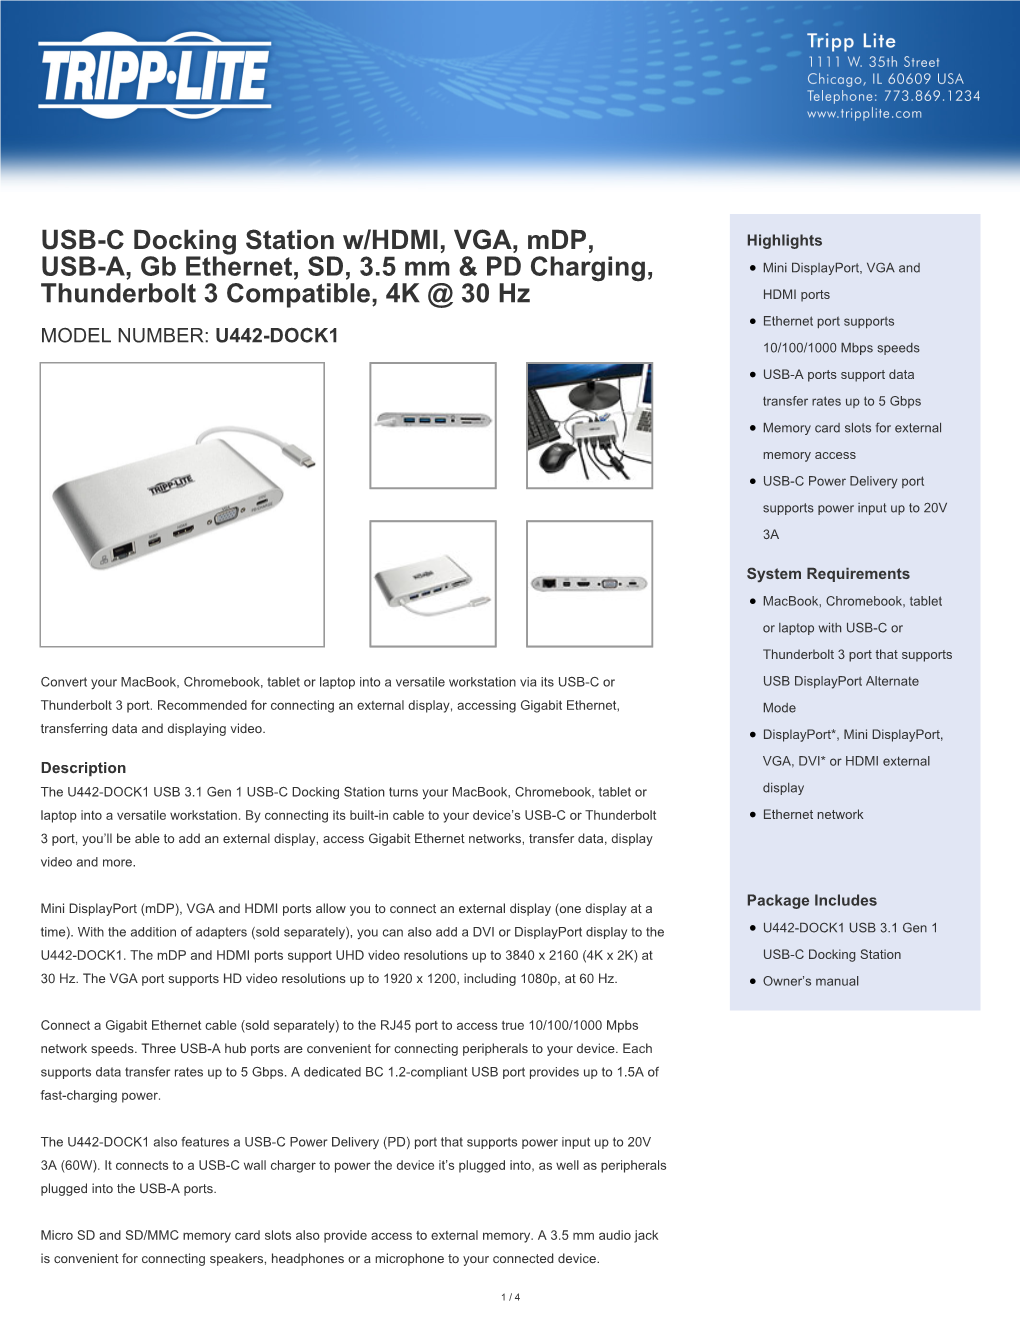 USB-C Docking Station W/HDMI, VGA, Mdp, USB-A, Gb Ethernet, SD